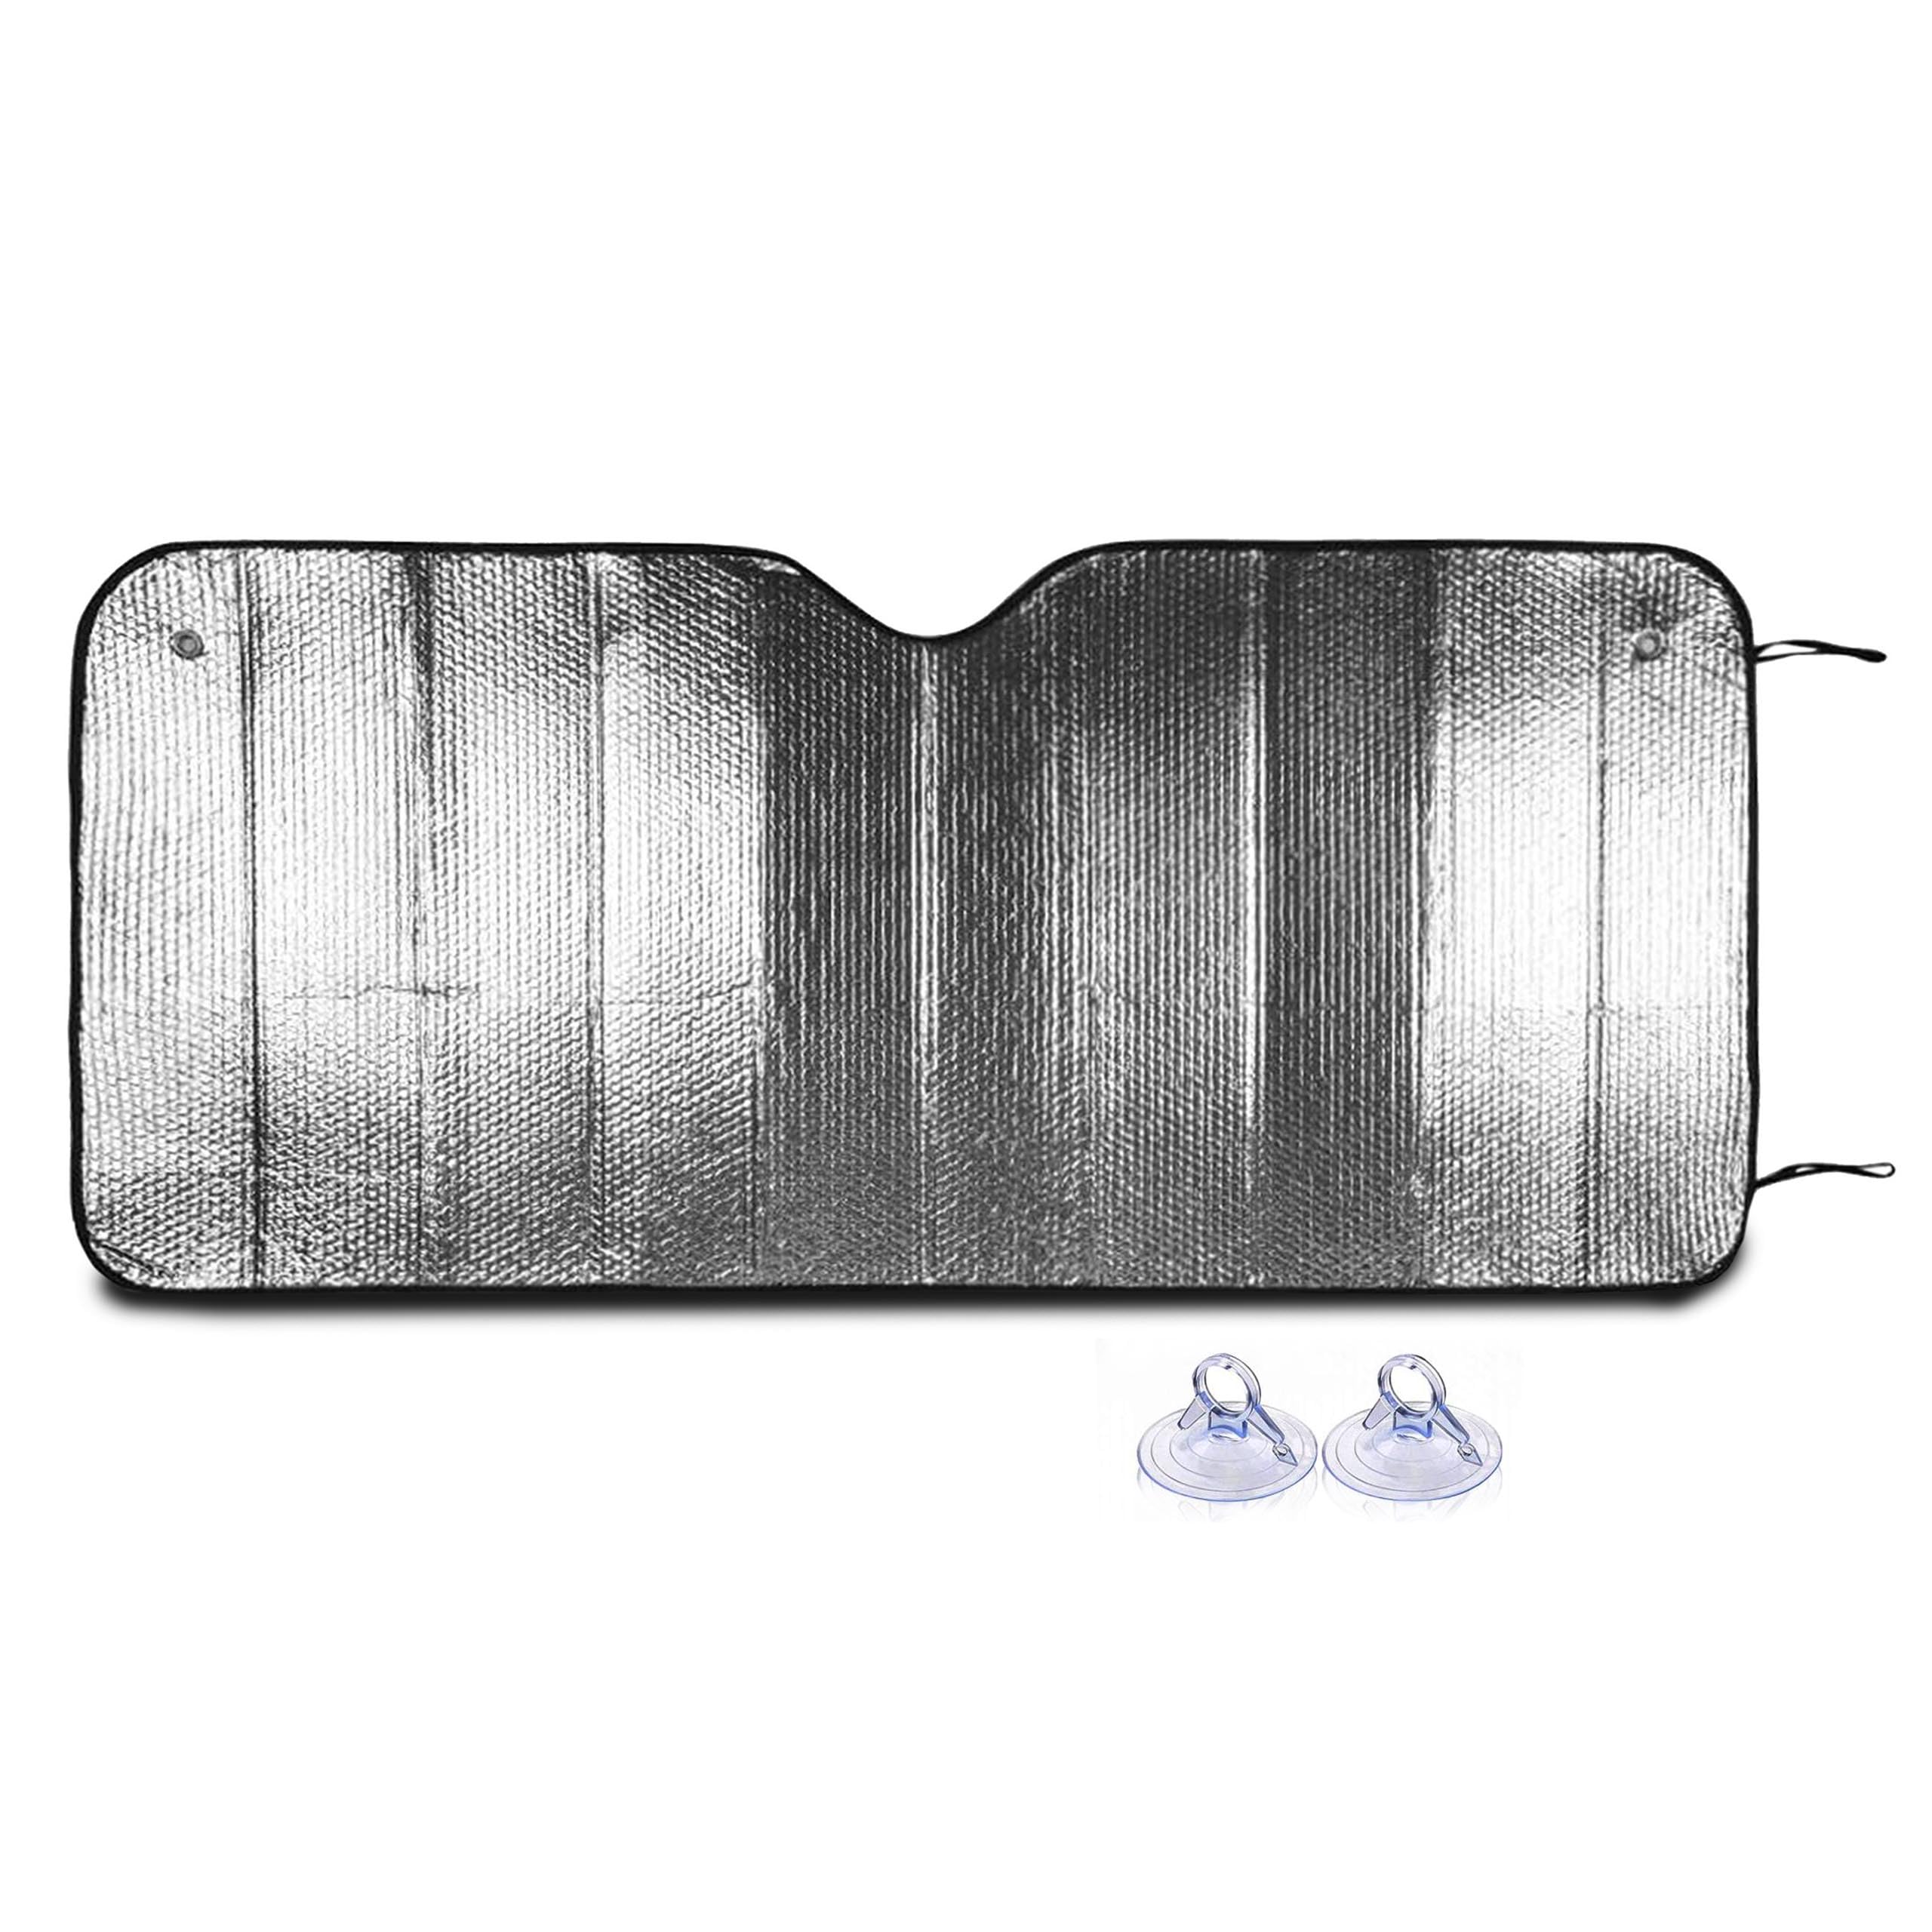 TIENDA EURASIA - Parasol Coche Delantero de Aluminio Reflectante,  Protección Rayos UV Parabrisas 130x60cm